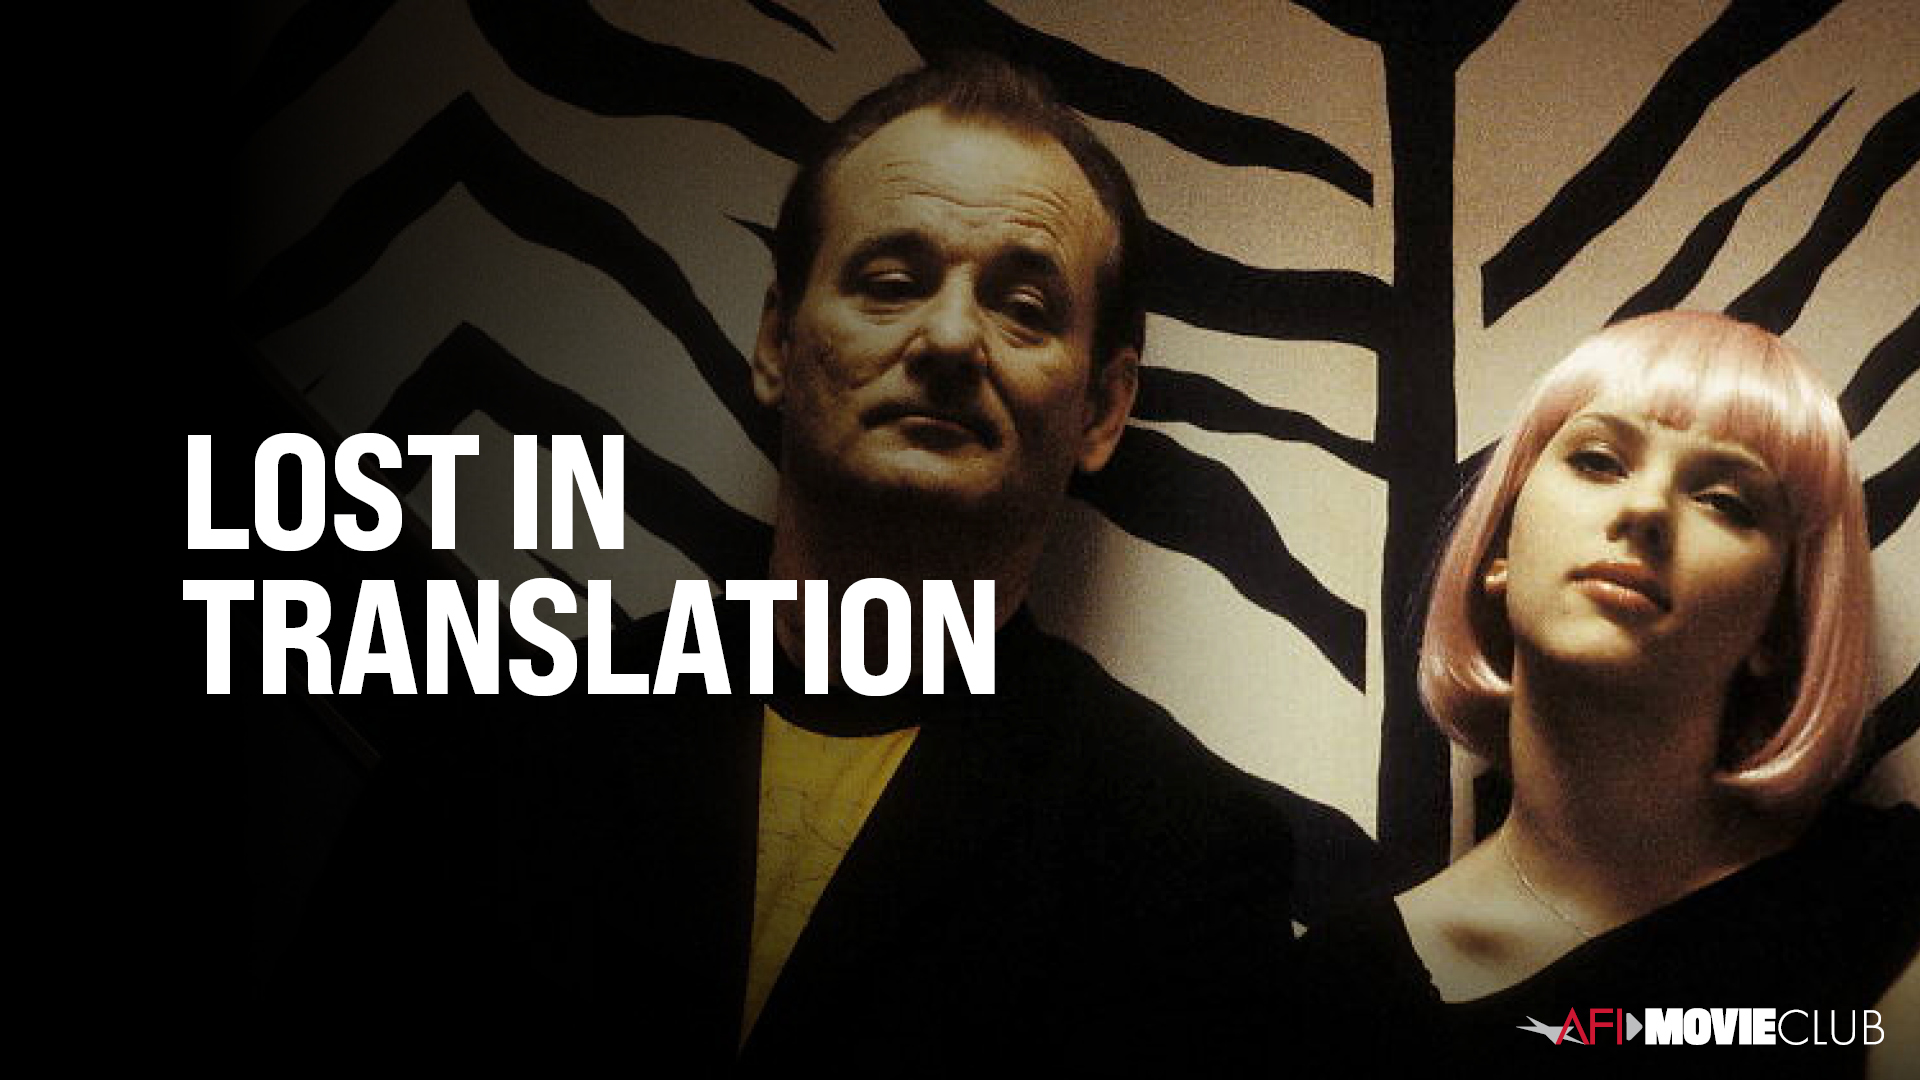 Lost in Translation Film Still - Bill Murray and Scarlett Johansson